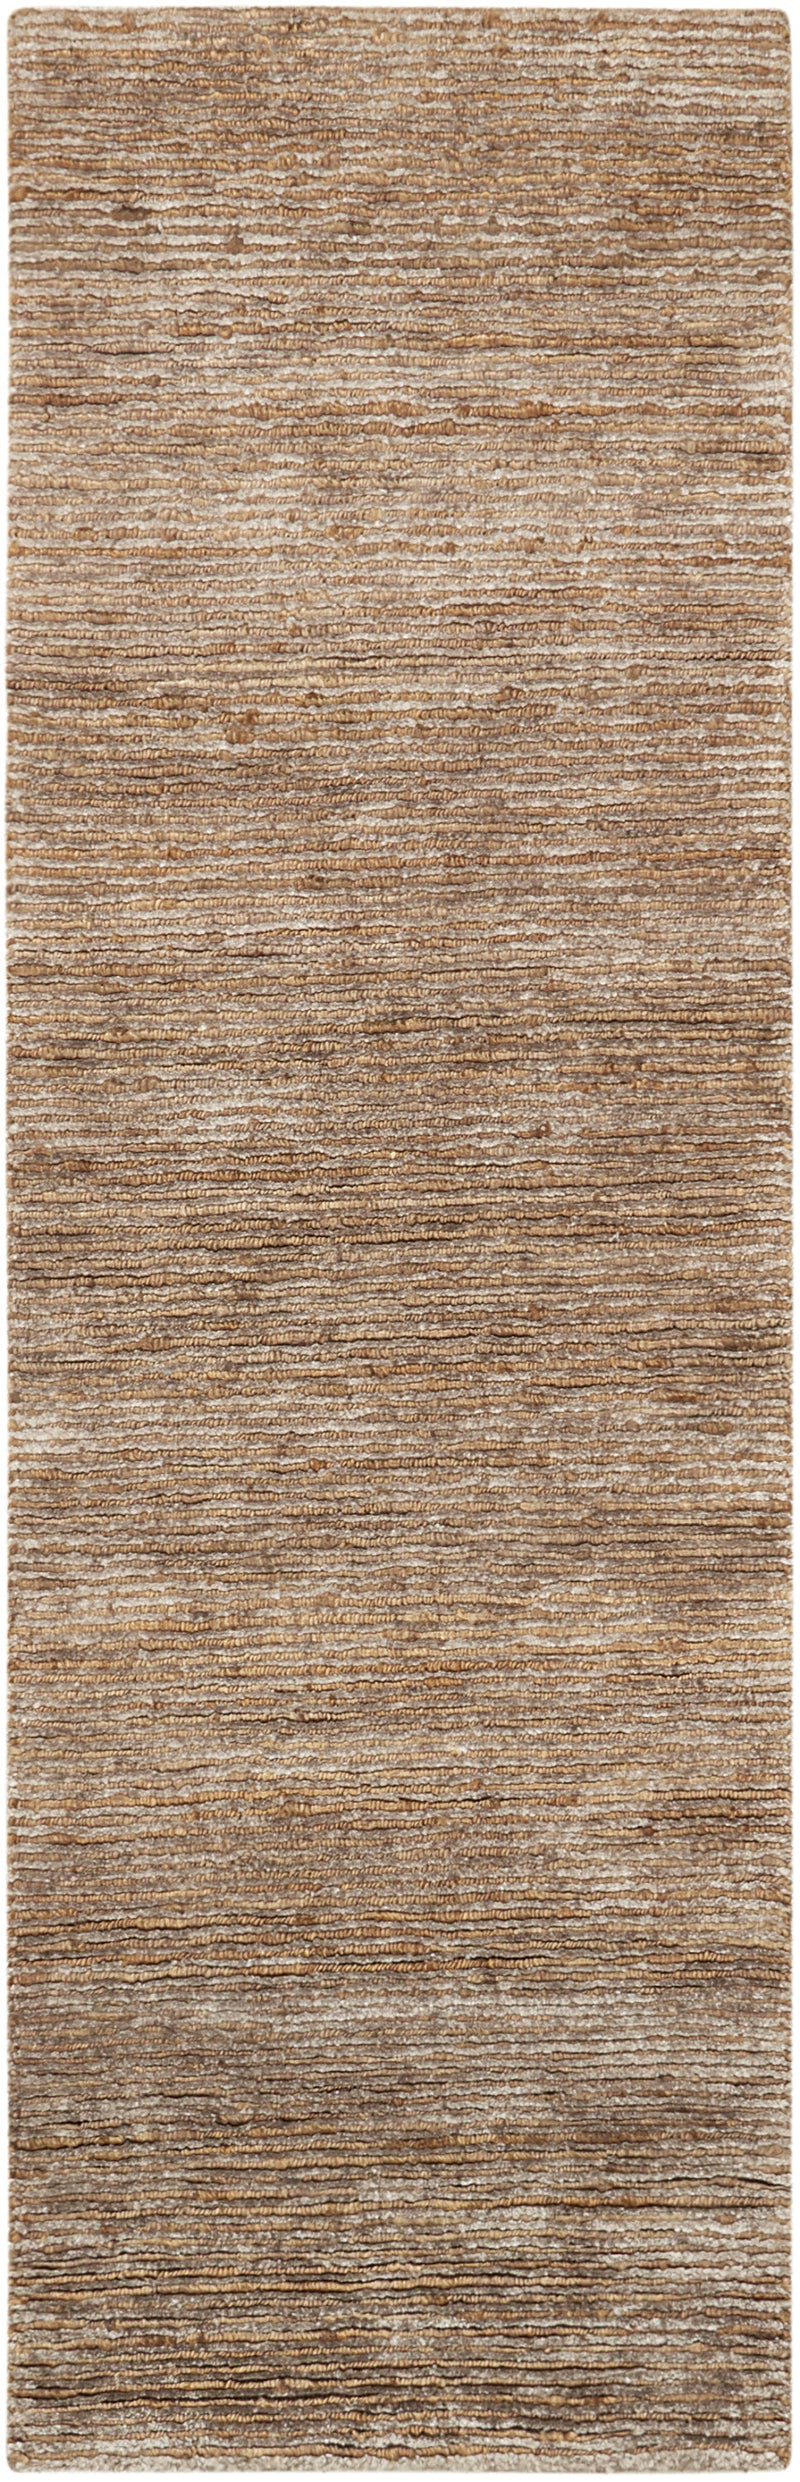 media image for mesa handmade amber rug by nourison 99446244871 redo 2 254